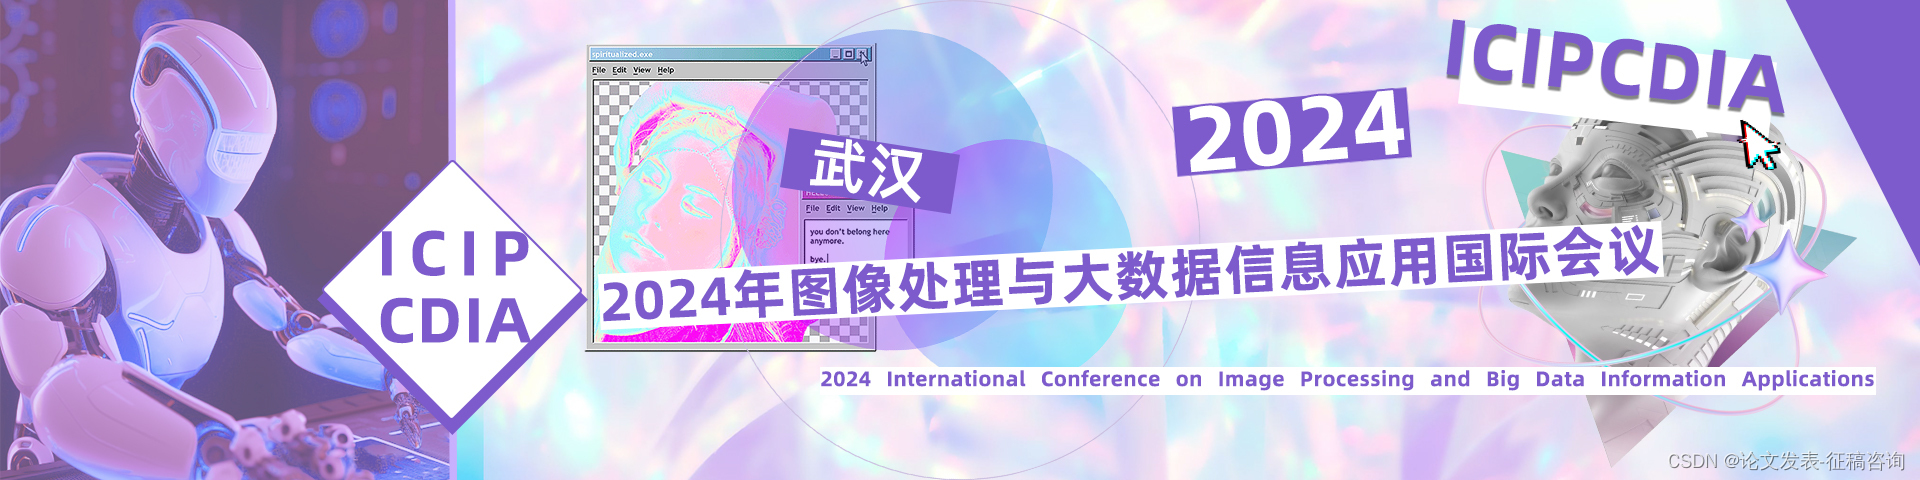 2024年图像处理与大数据信息应用国际会议(ICIPCDIA 2024)